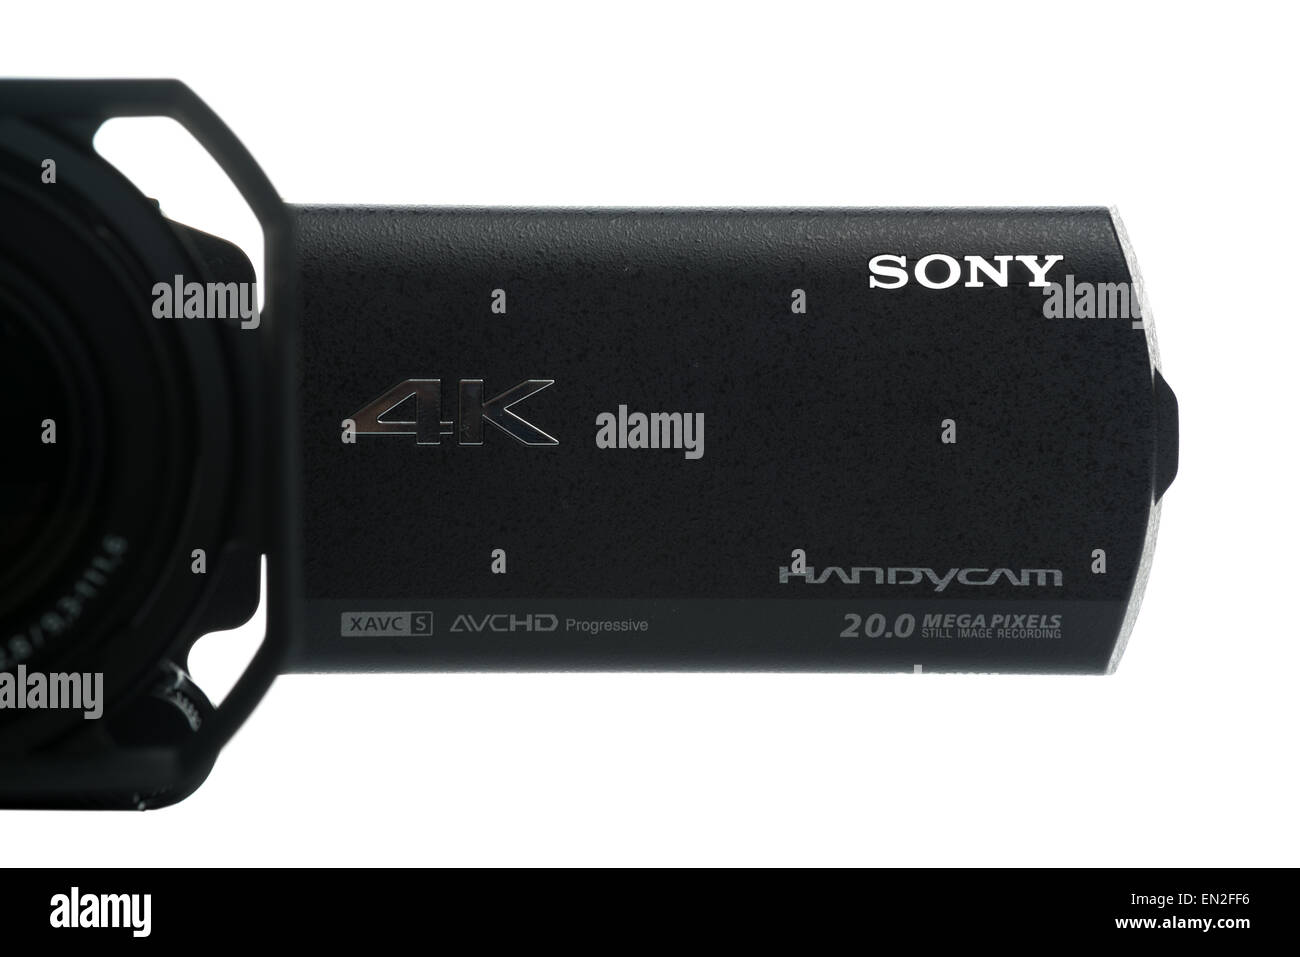 NOVI SAD, Serbia - 25 de abril de 2015: Sony FDR AX100 videocámara Handycam 4k (anunciado en 2014.) capta la ultra alta definición pie Foto de stock